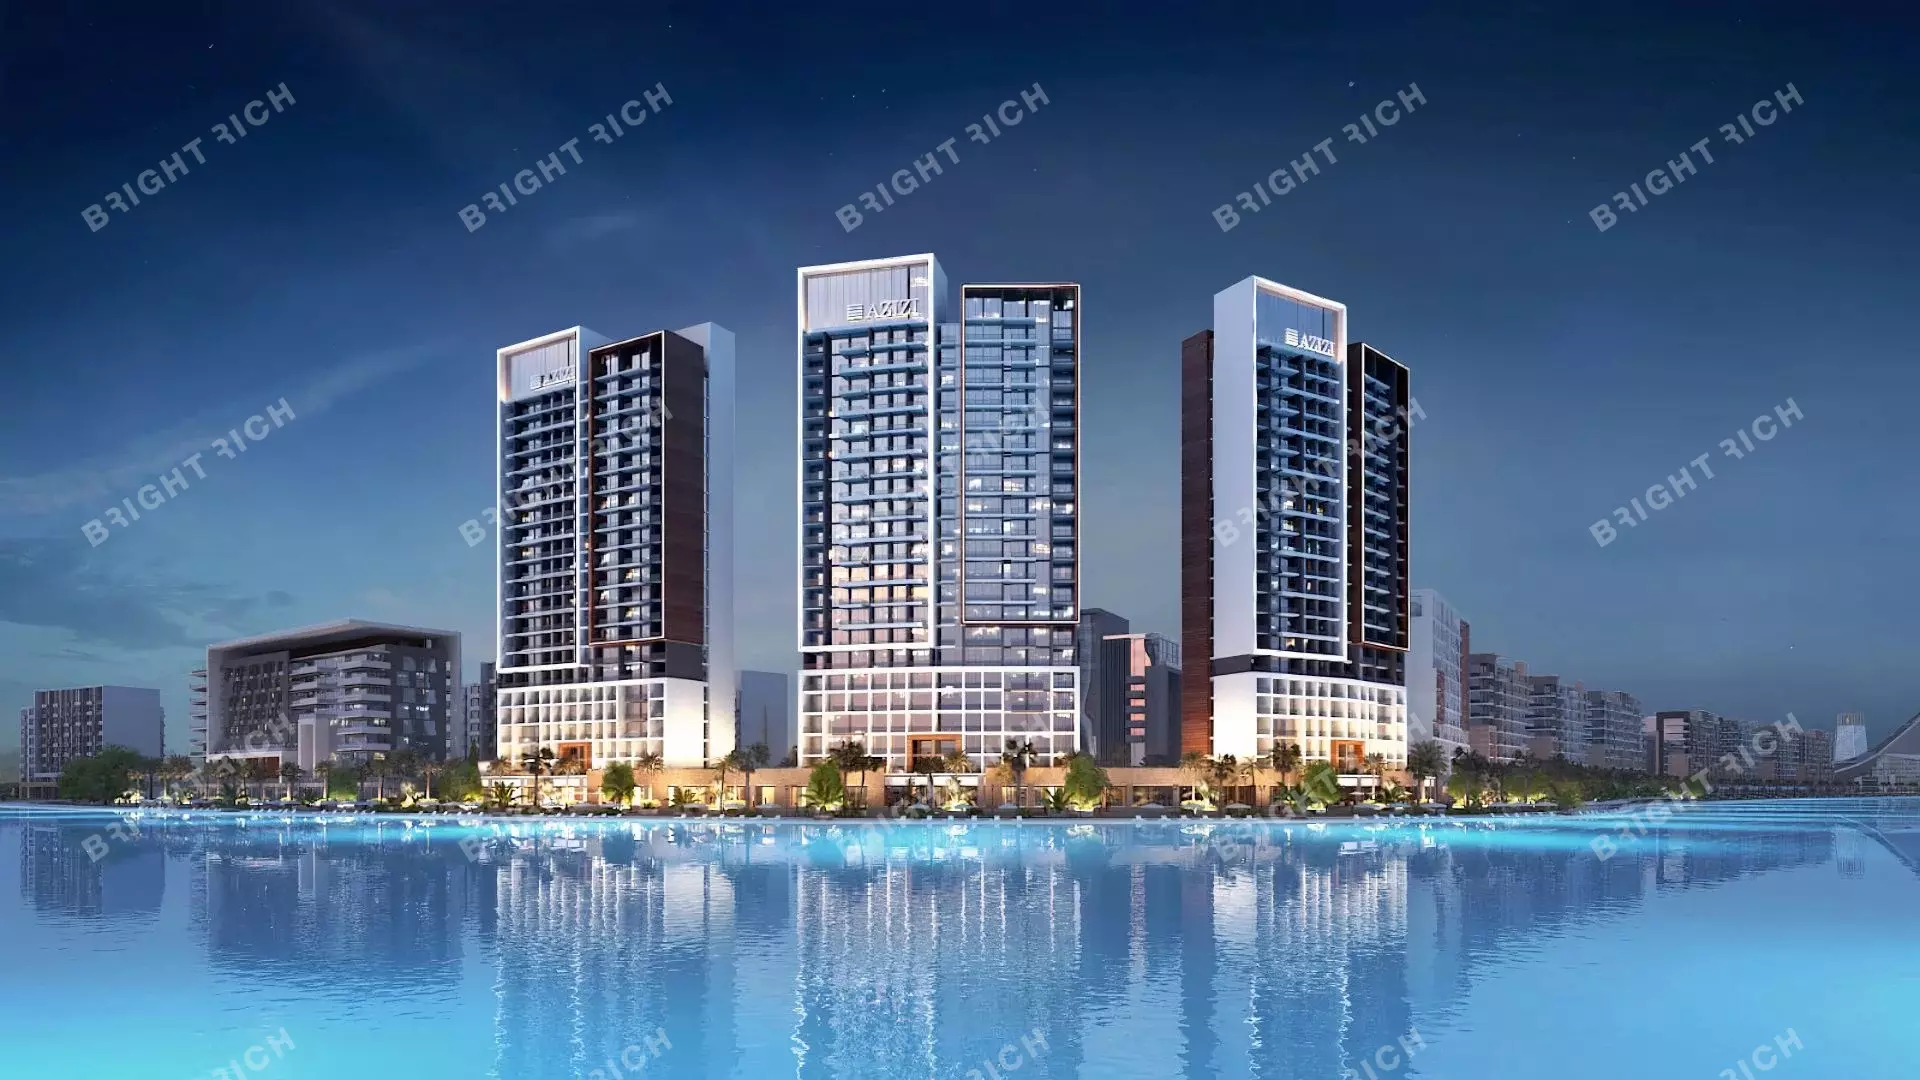 Azizi Riviera Building 10, apart complex in Dubai